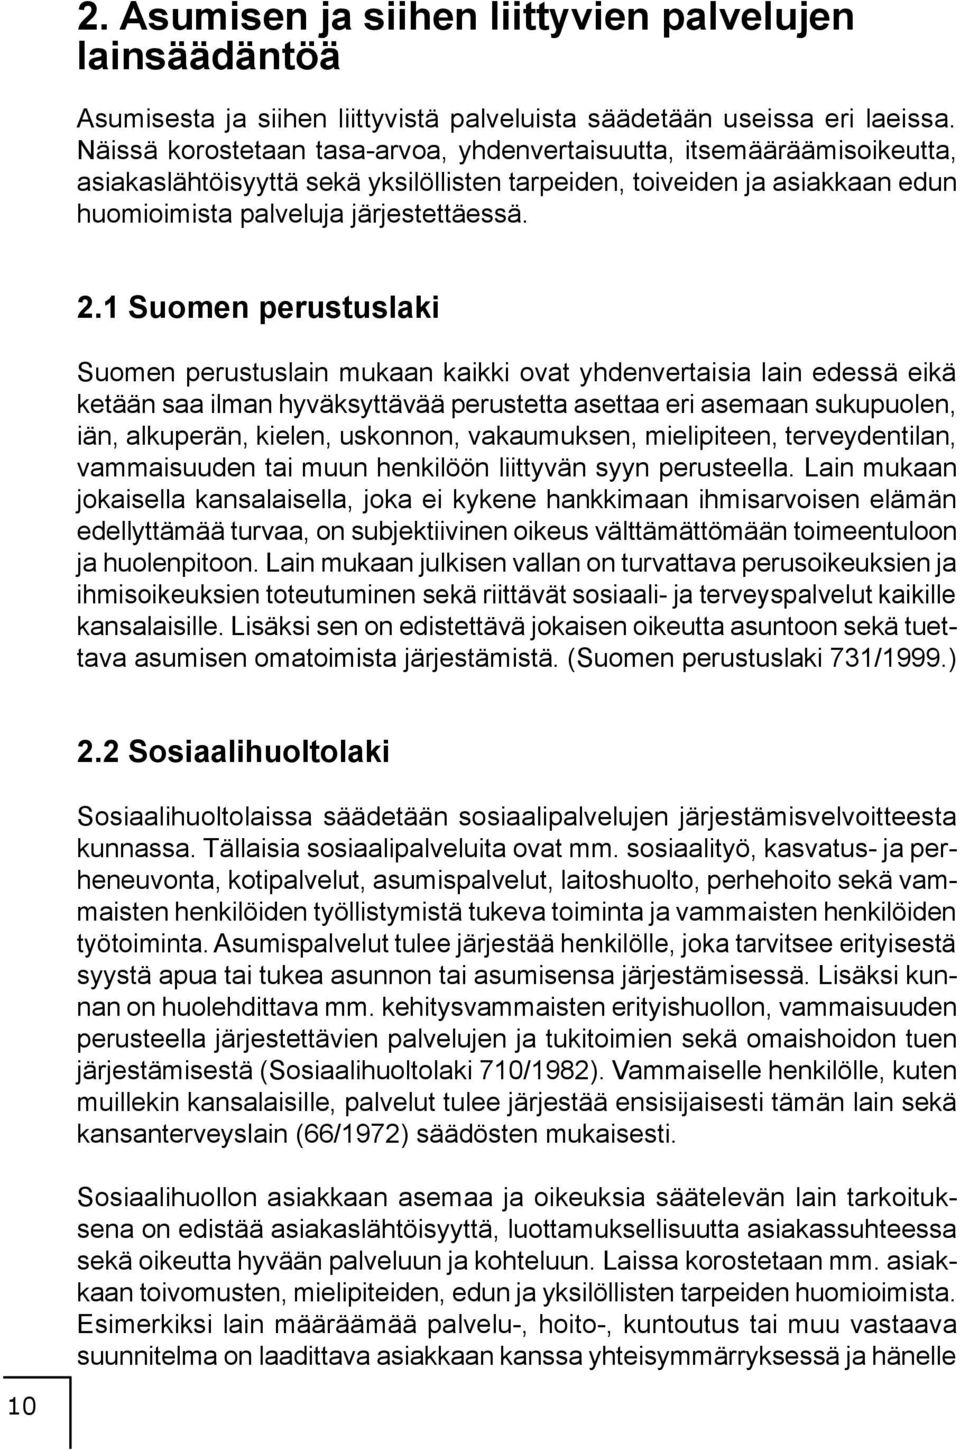 1 Suomen perustuslaki Suomen perustuslain mukaan kaikki ovat yhdenvertaisia lain edessä eikä ketään saa ilman hyväksyttävää perustetta asettaa eri asemaan sukupuolen, iän, alkuperän, kielen,